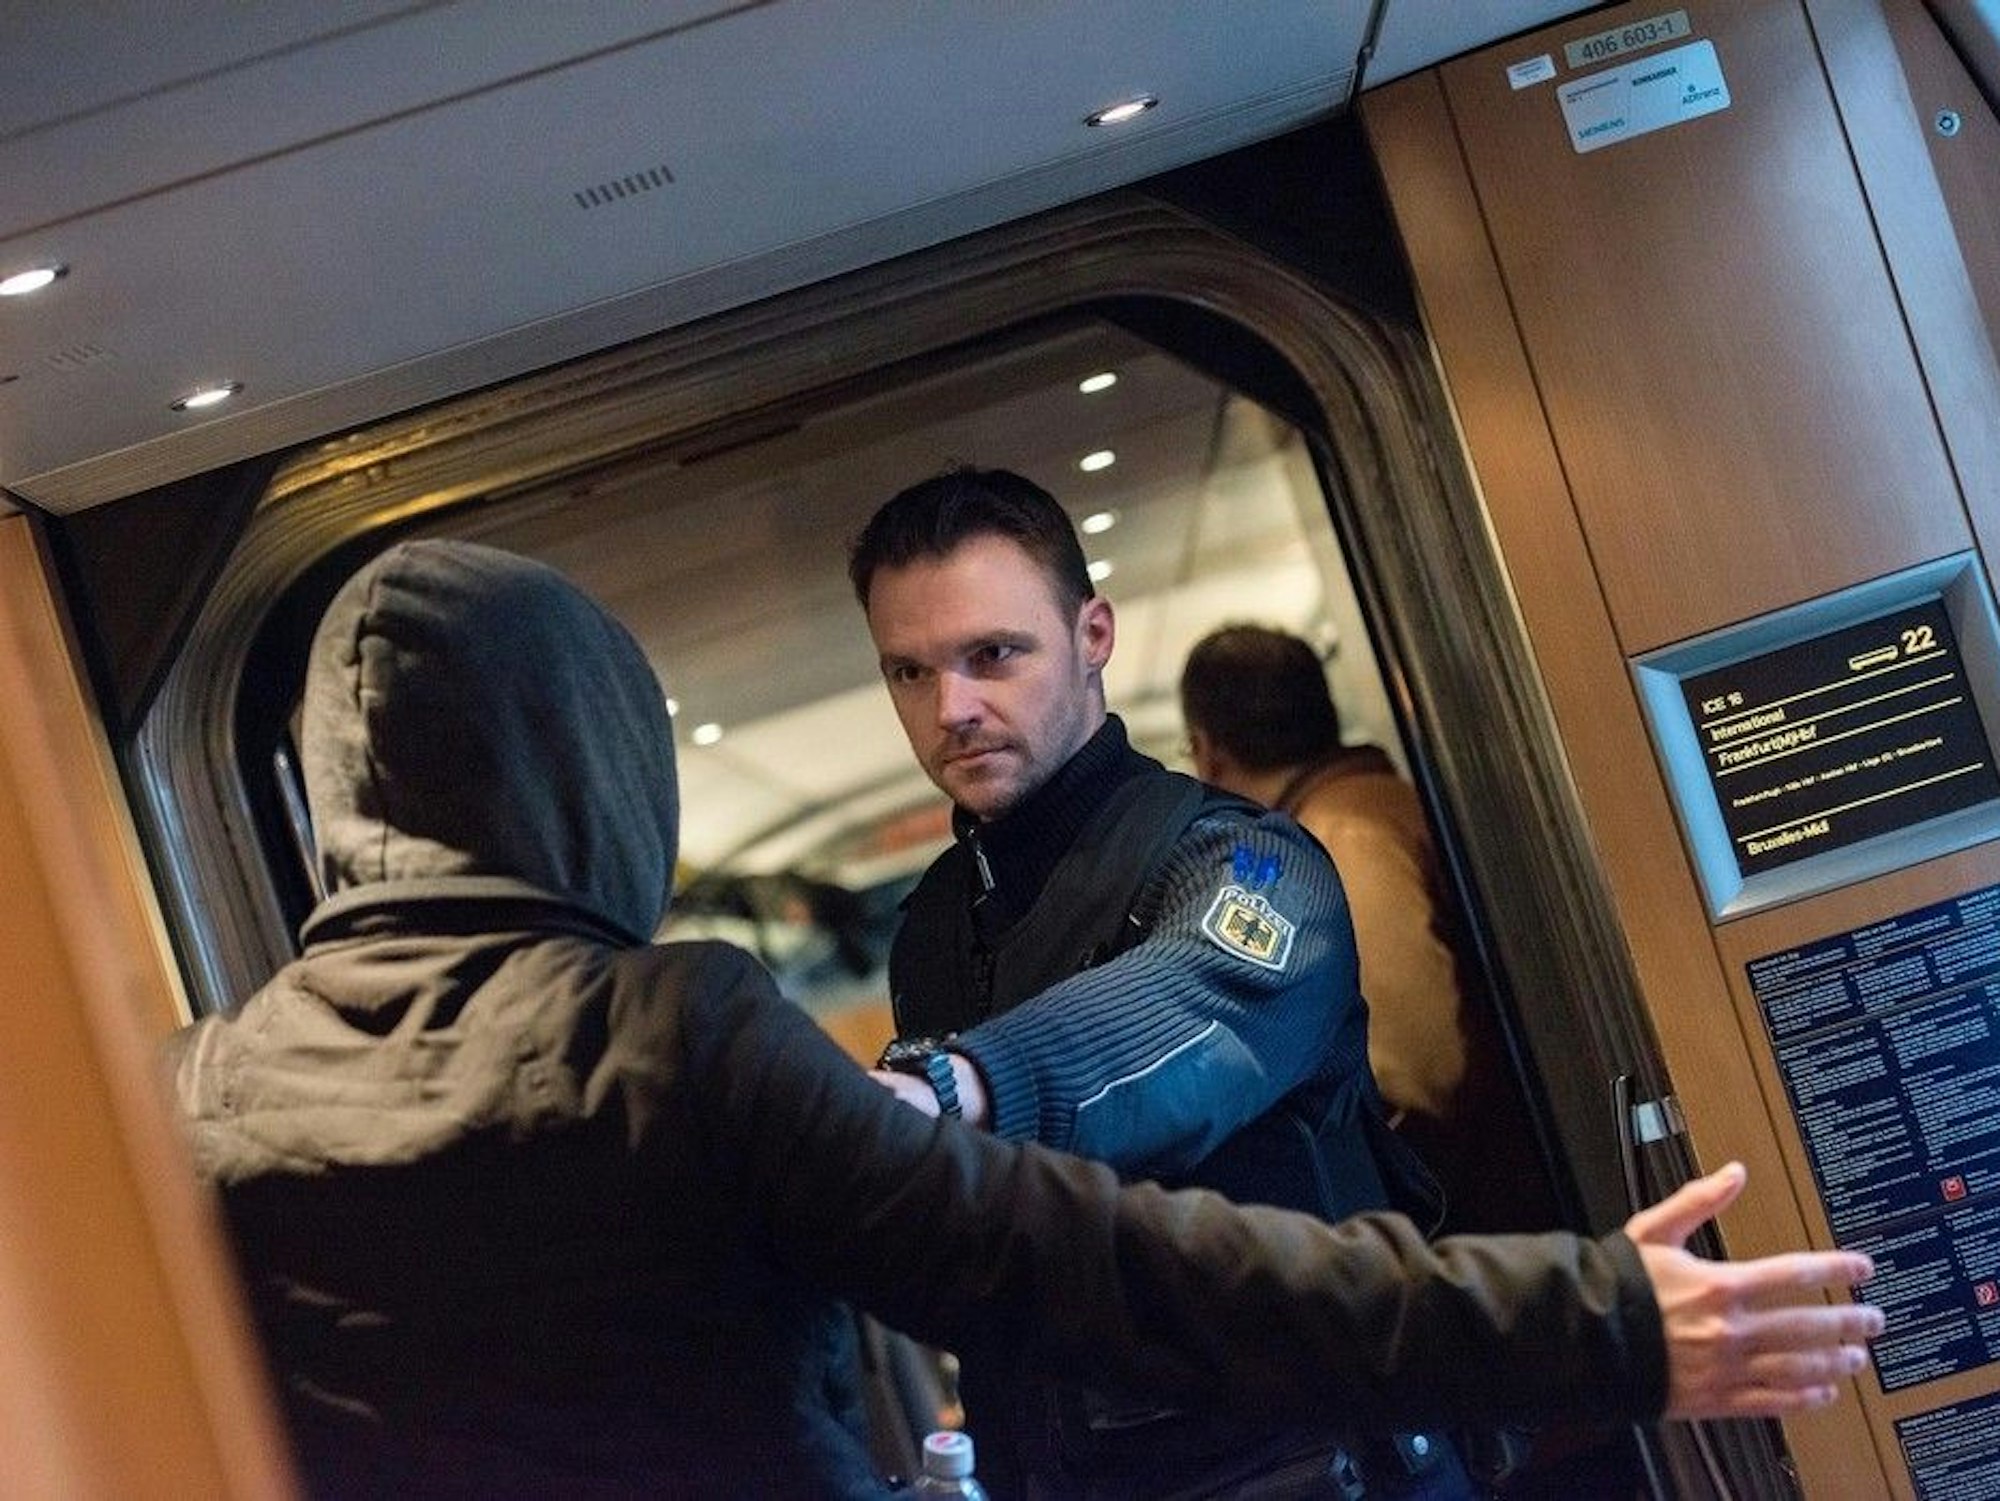 Bundespolizist weist in Bahn Fahrgast zurecht.